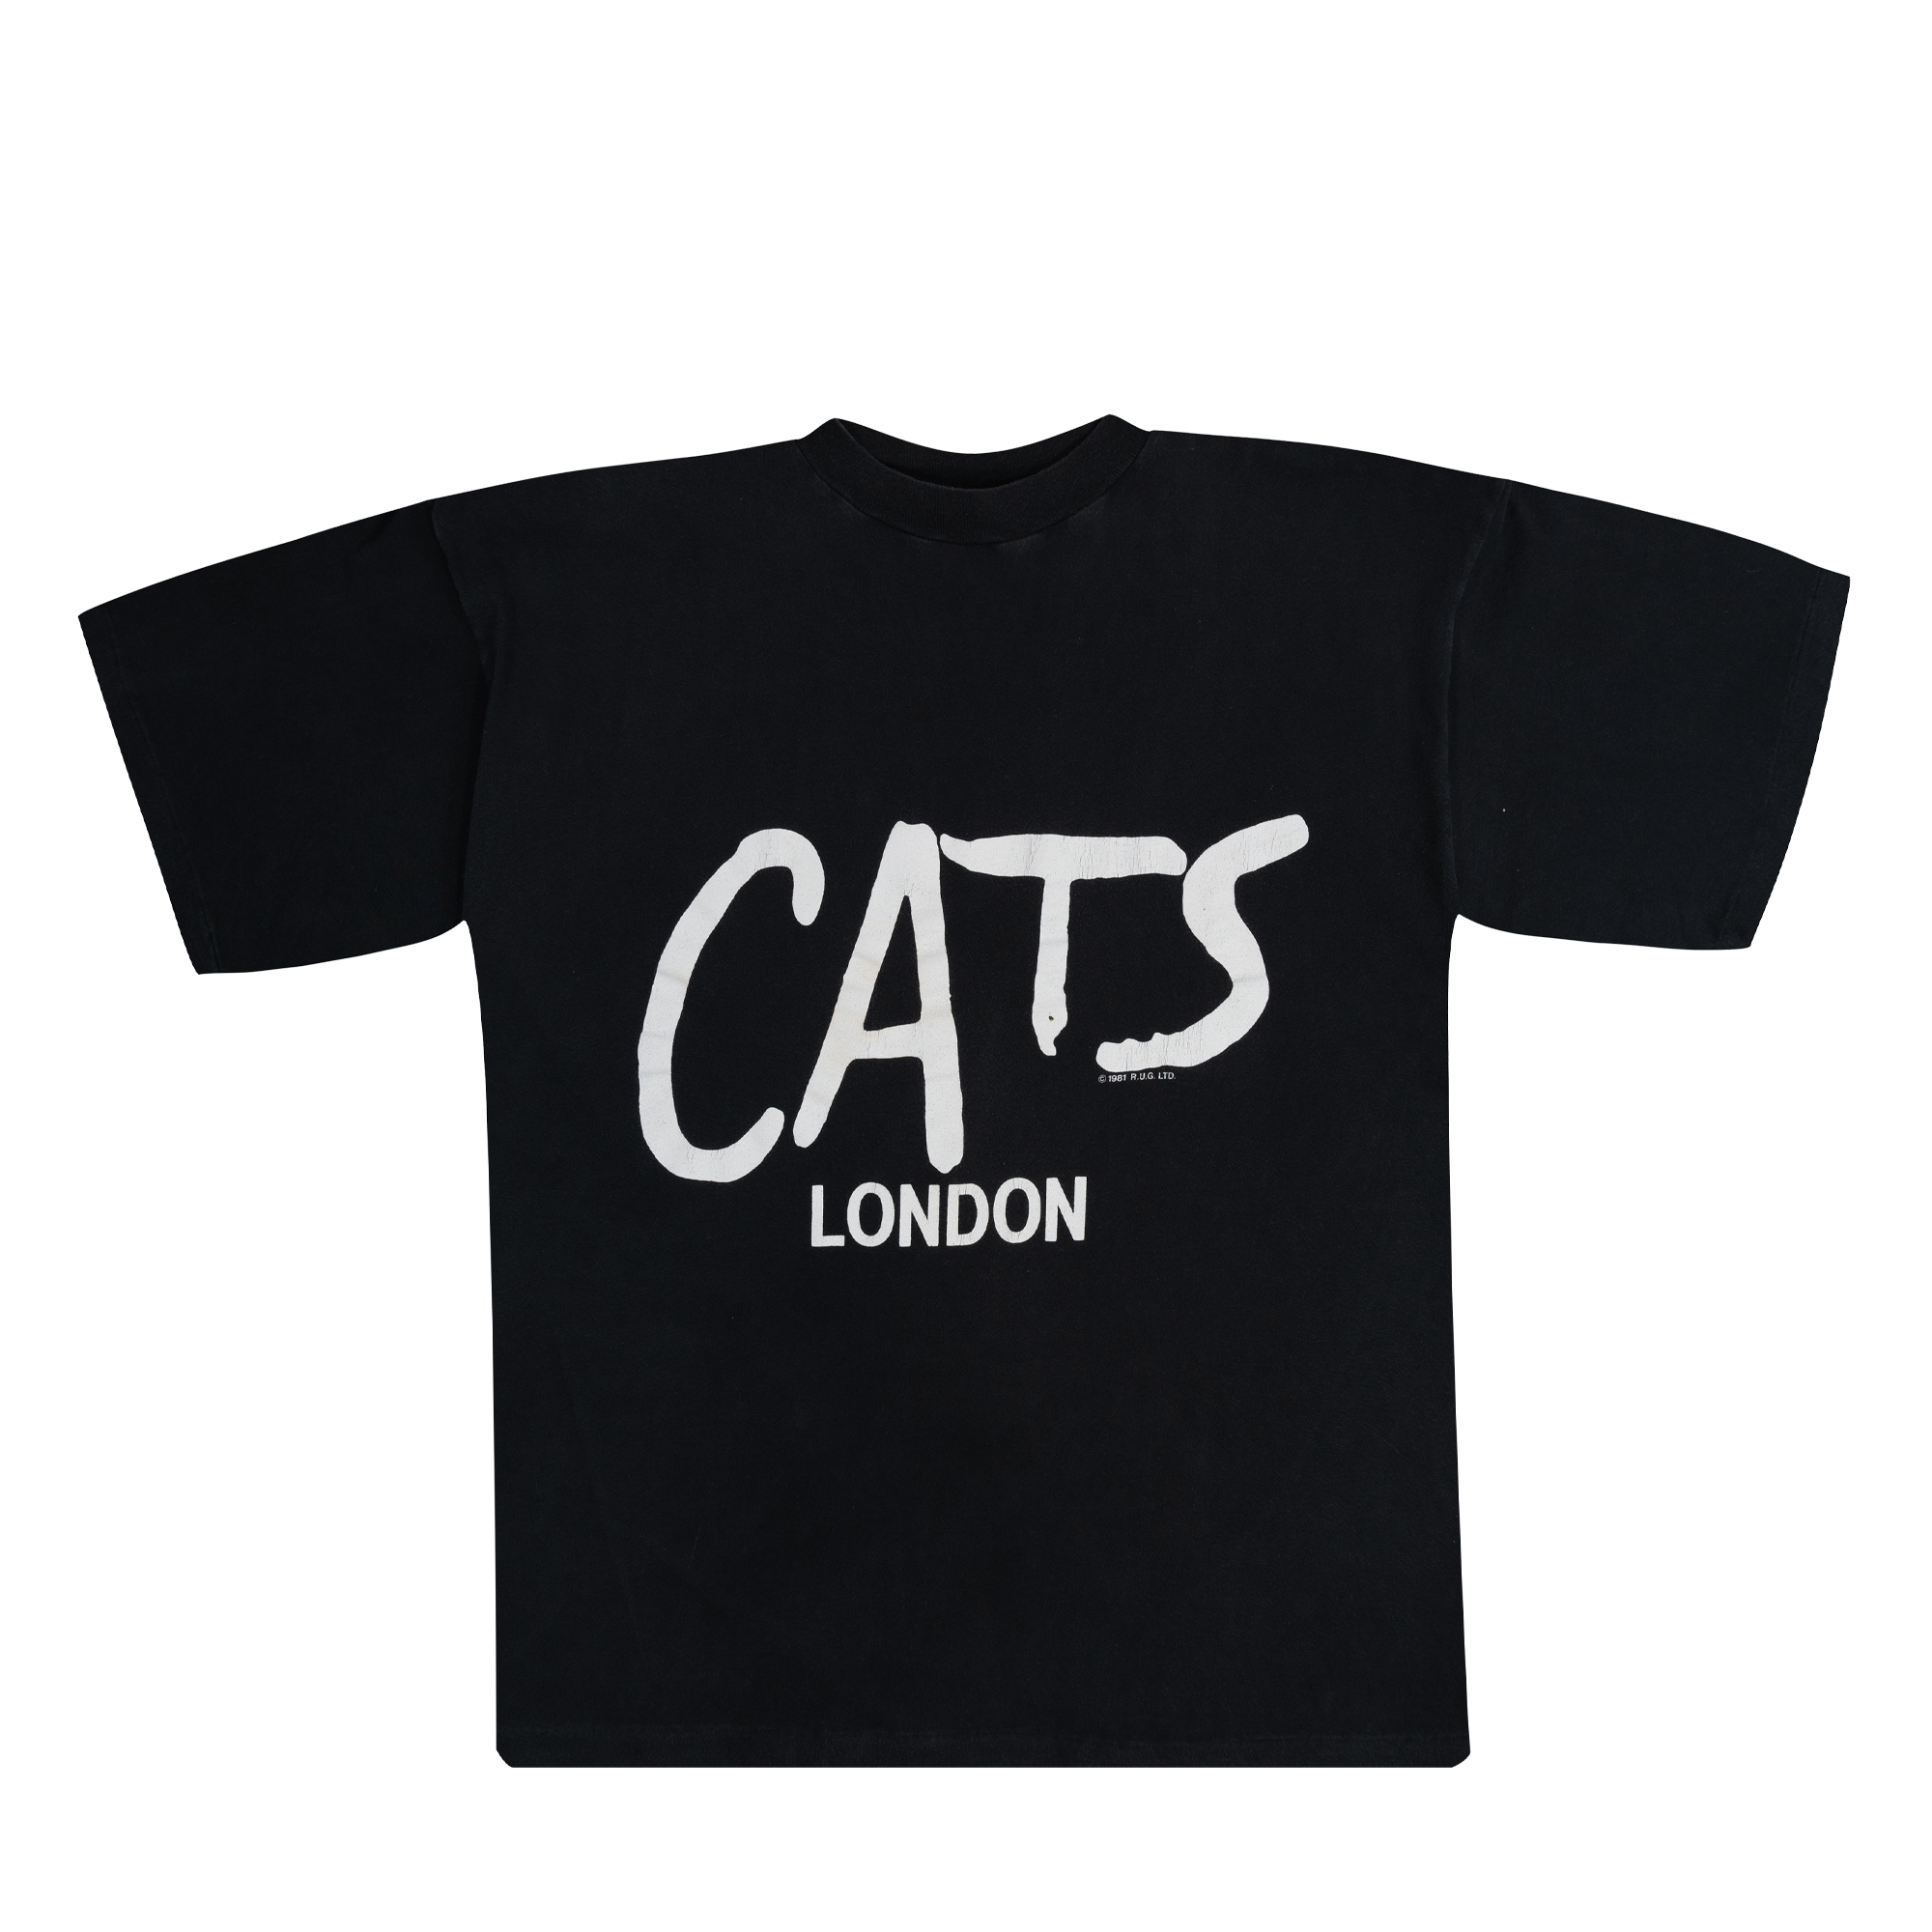 Cats London Movie Promo Tee Black-PLUS